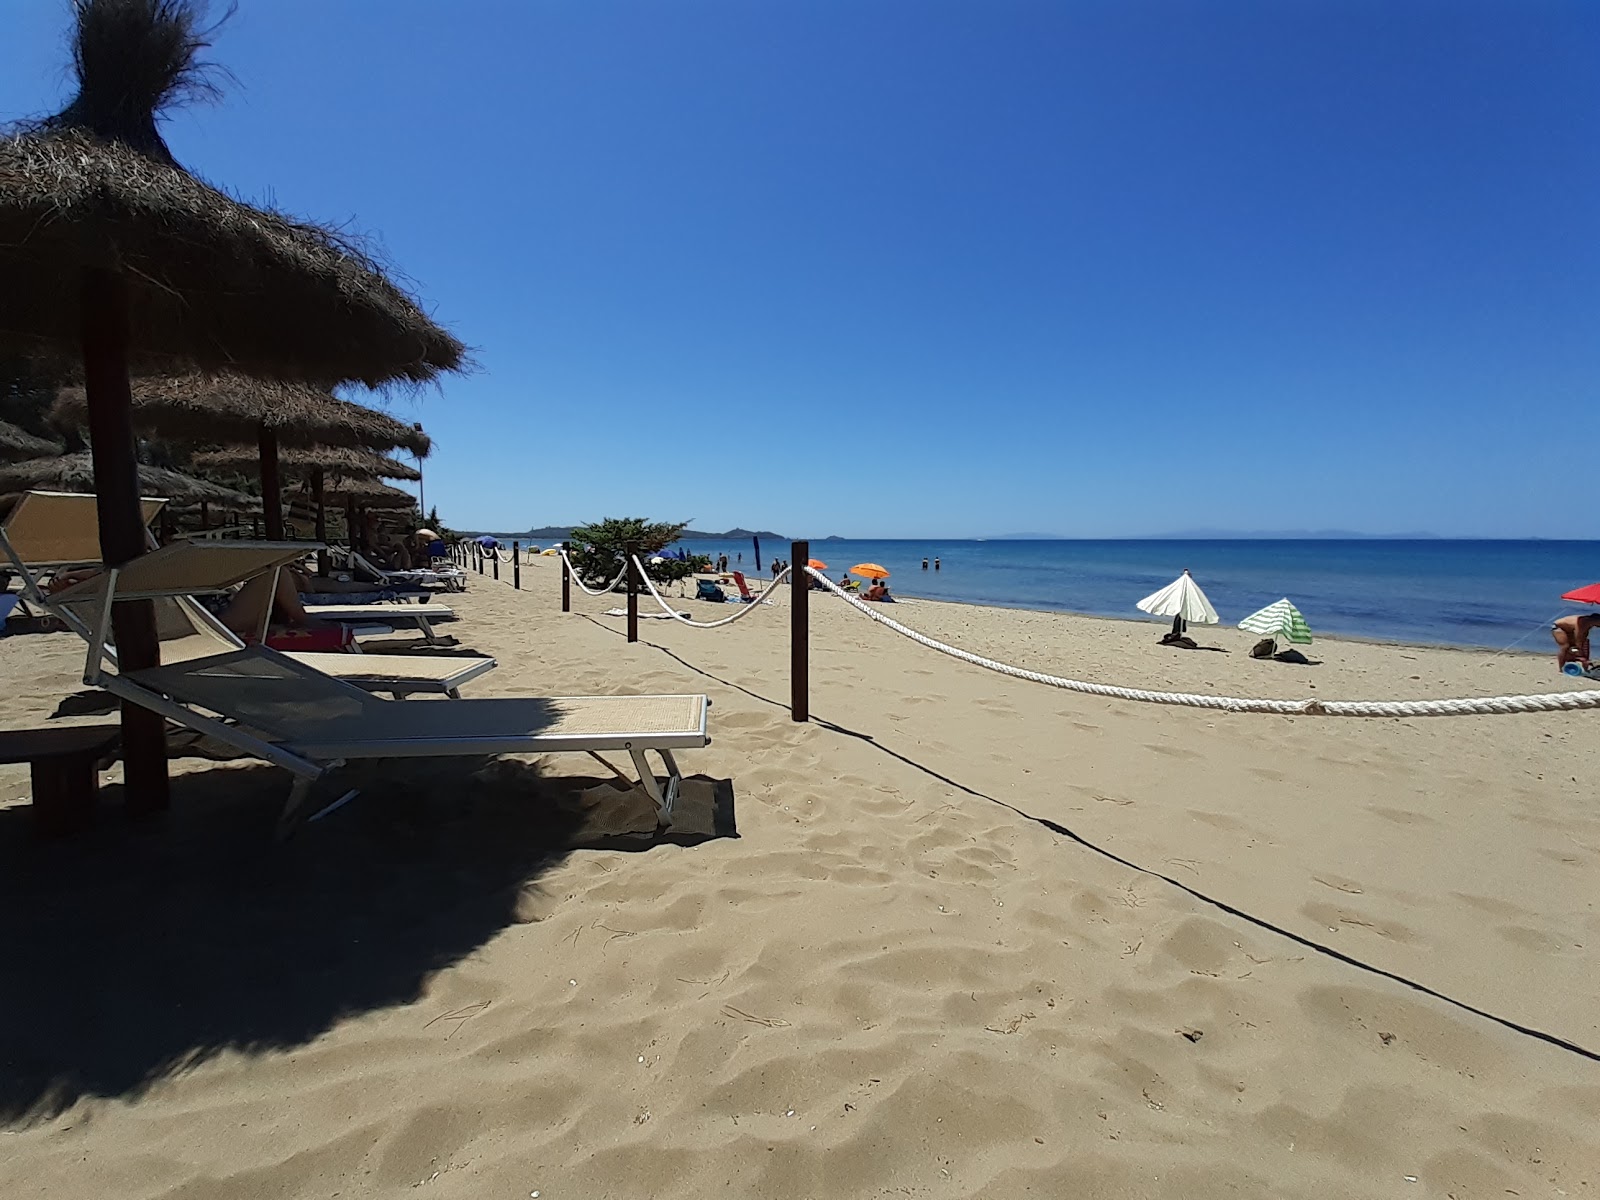 Foto af Punta Ala beach - populært sted blandt afslapningskendere